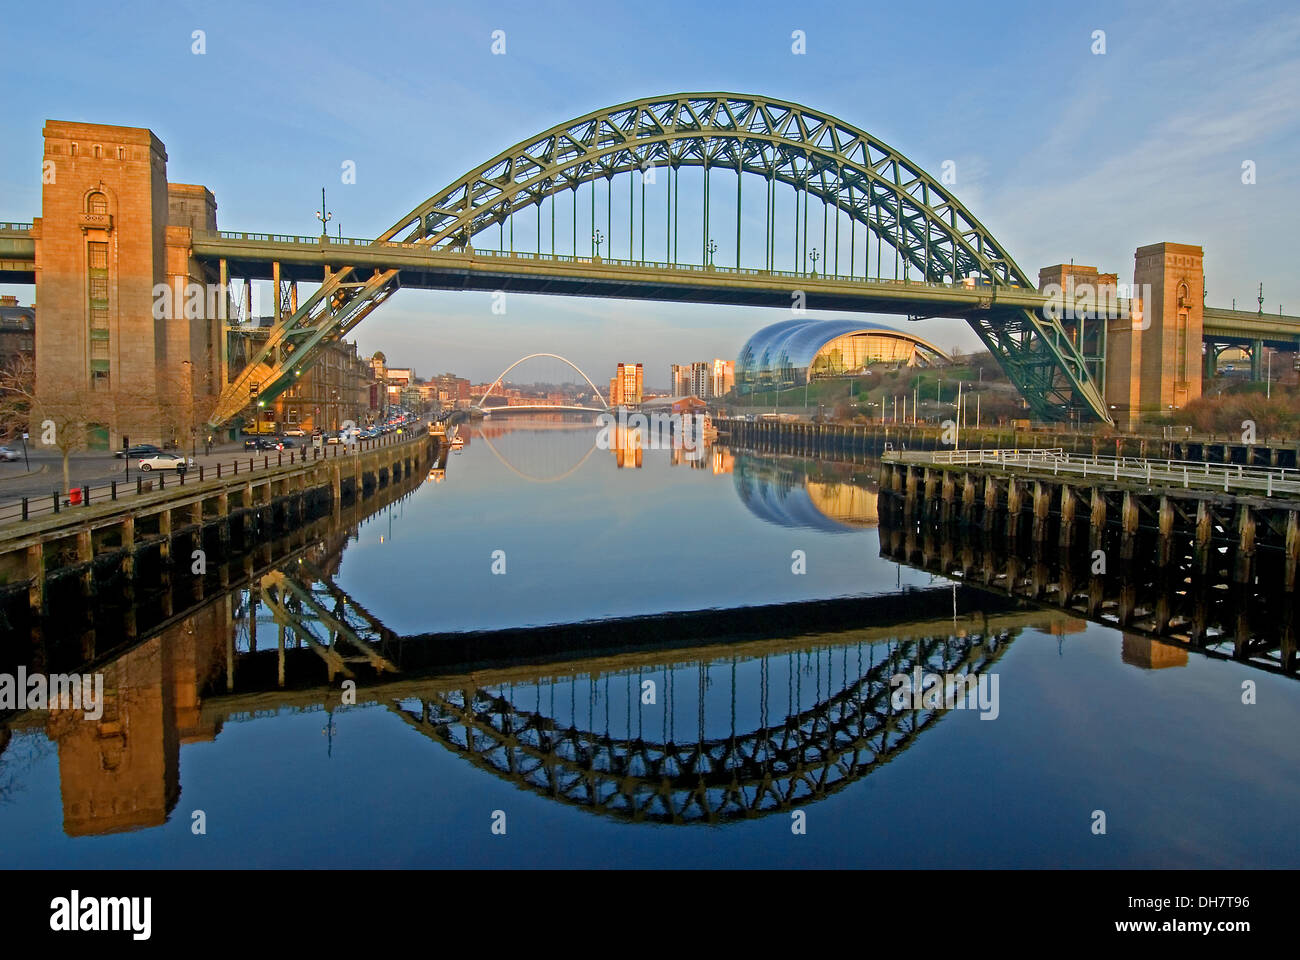 Newcastle upon Tyne iconici Tyne Bridge è riflessa nel fiume Tyne, con la costruzione di salvia e Gateshead Millennium Bridge. Foto Stock